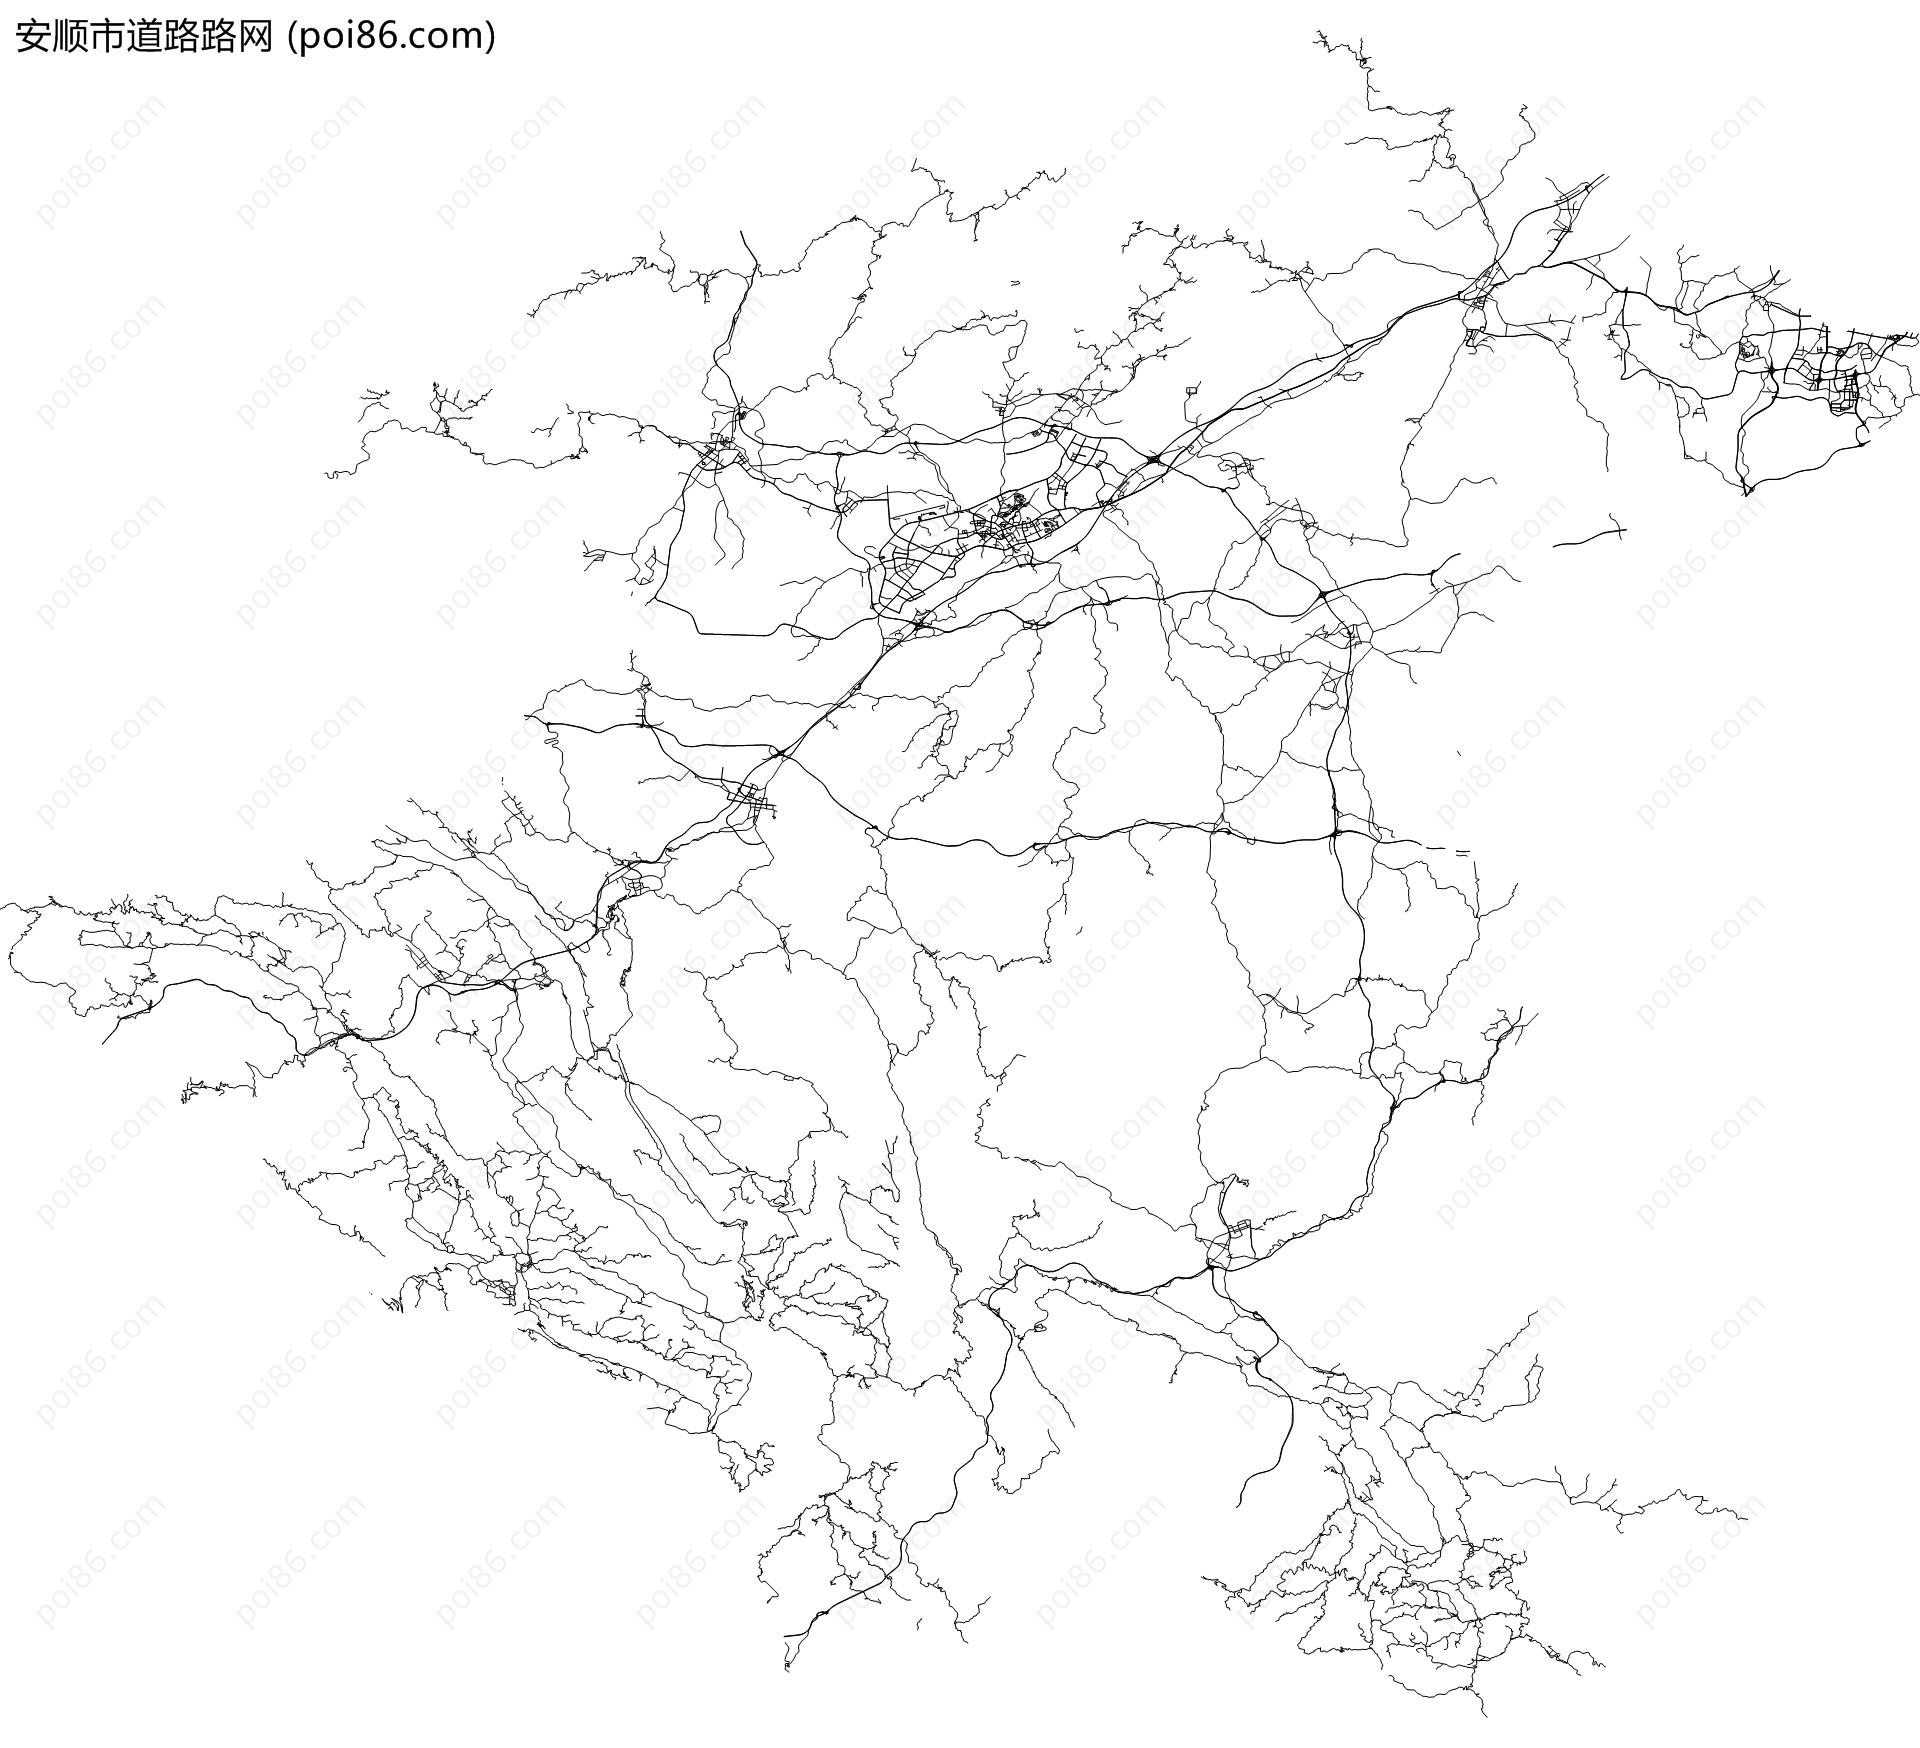 安顺市道路路网地图